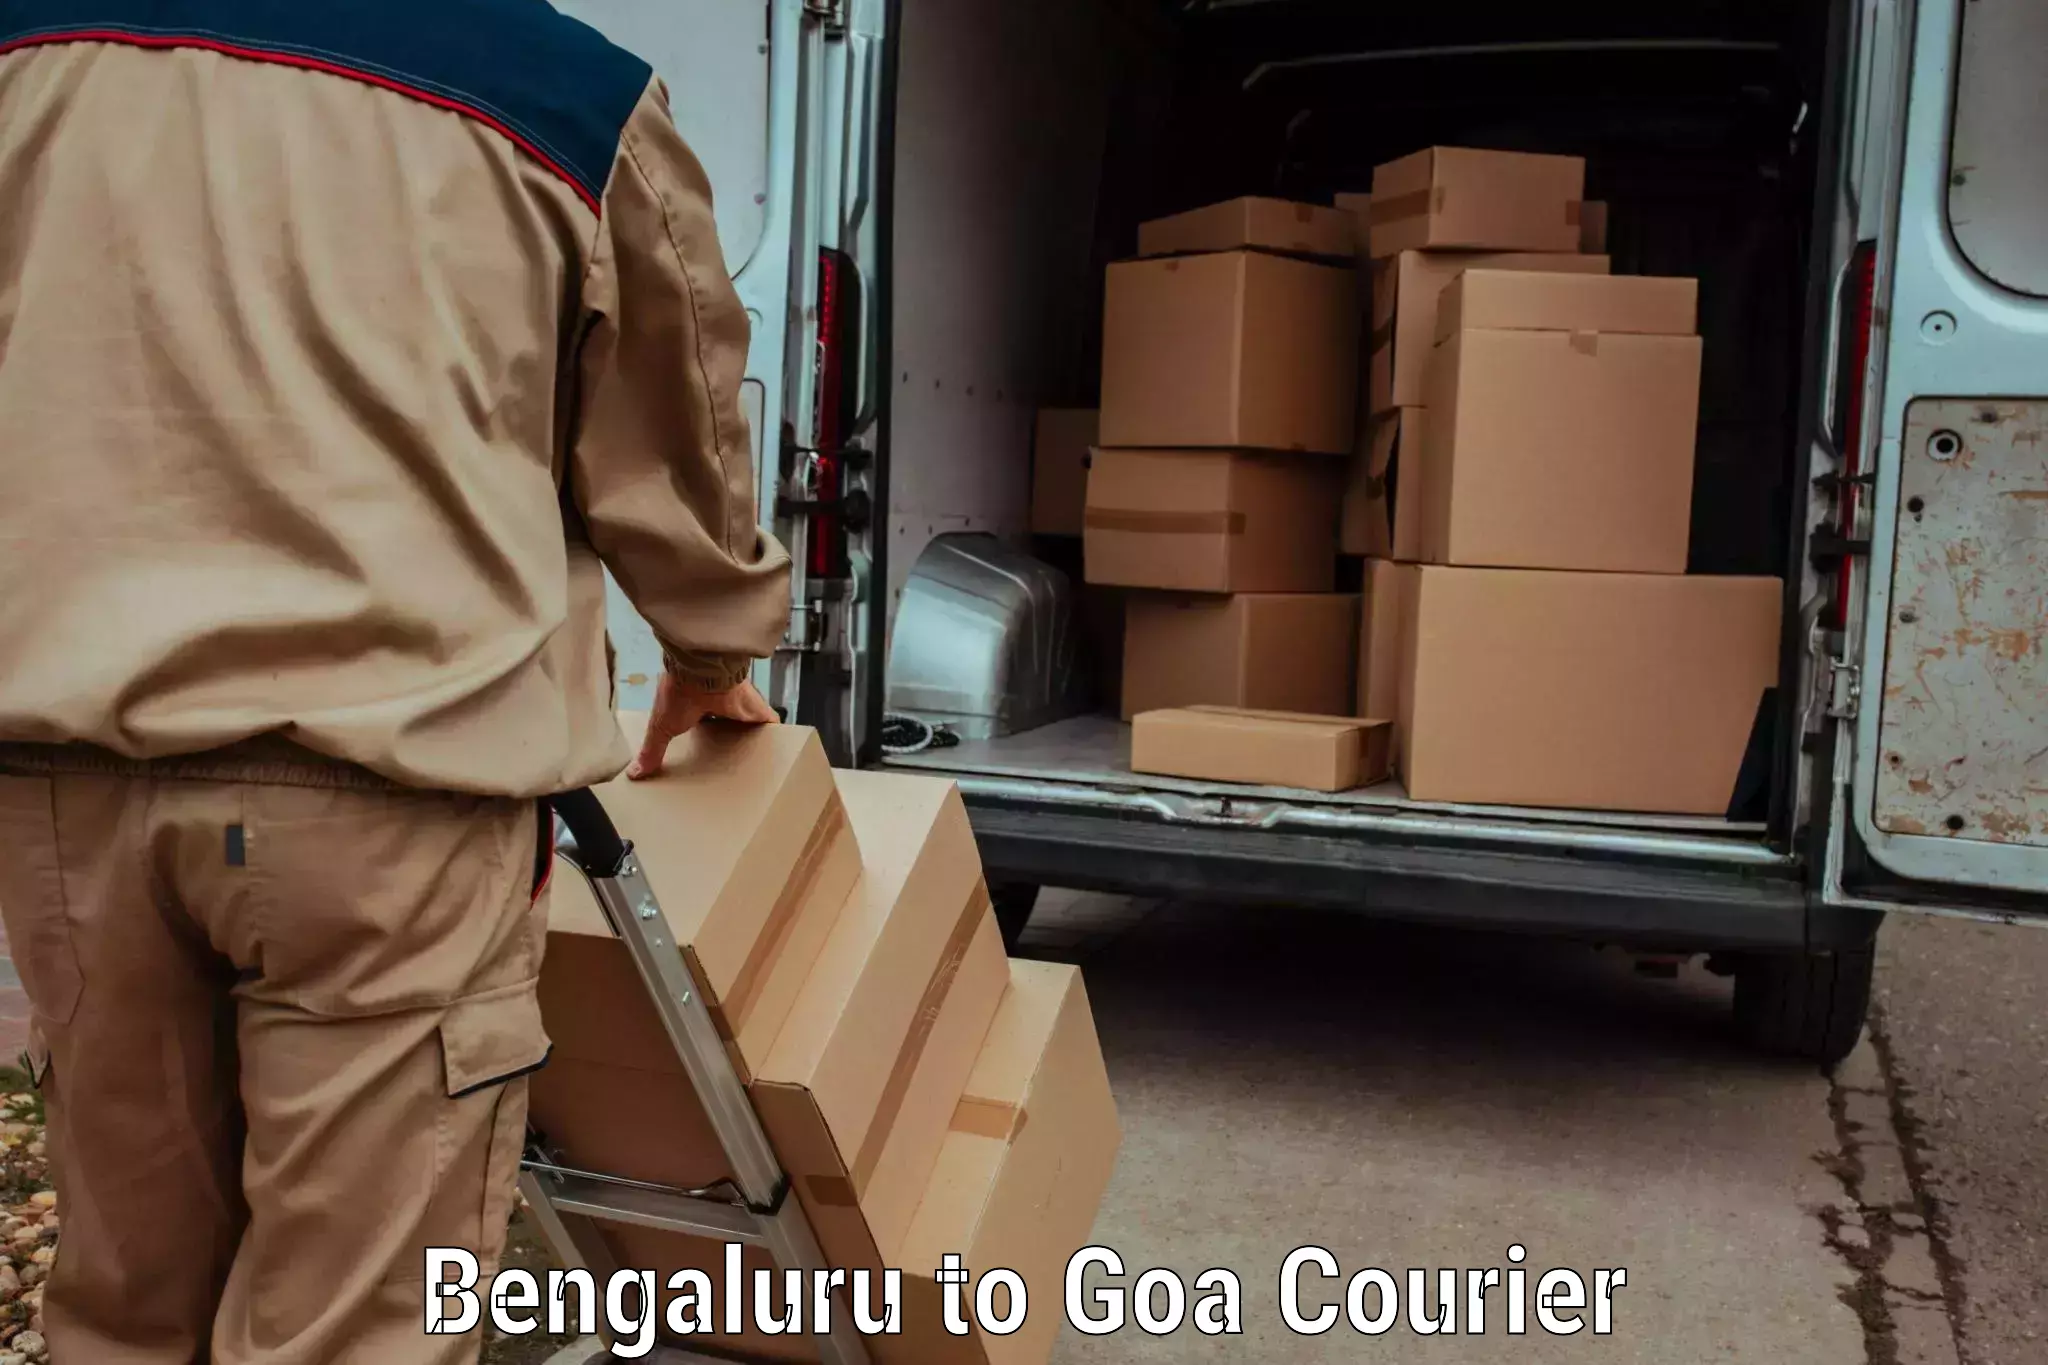 Next day courier Bengaluru to IIT Goa